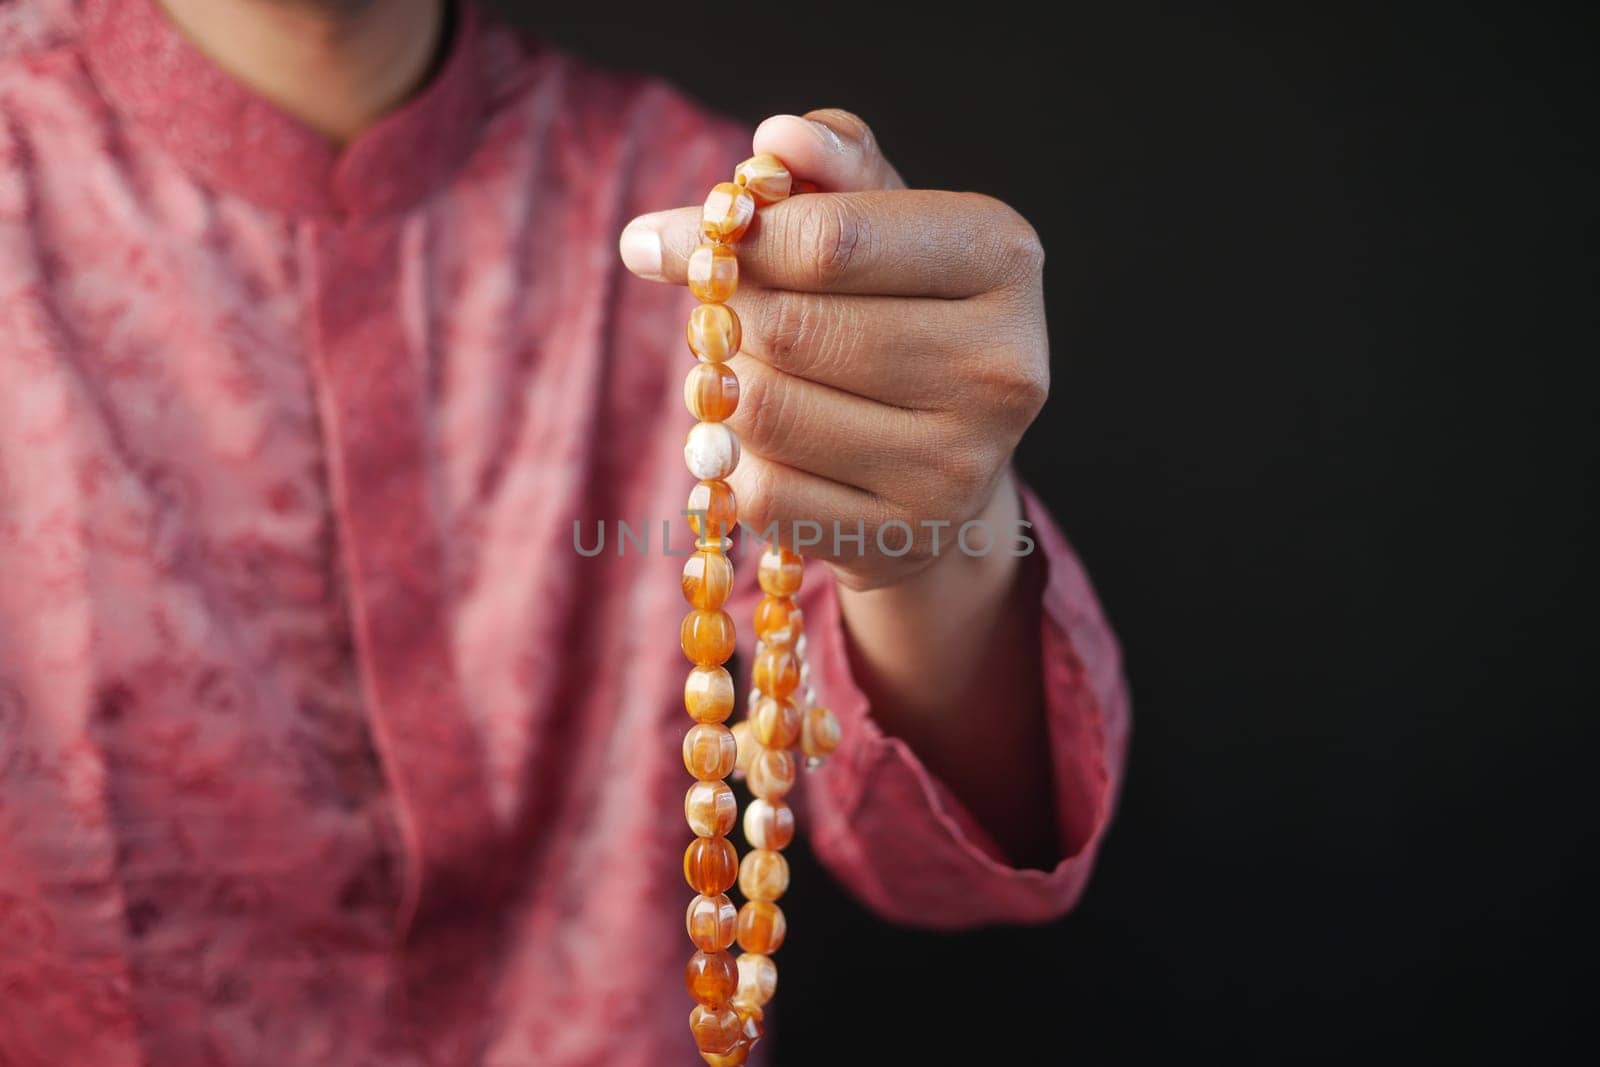 muslim man praying during ramadan .